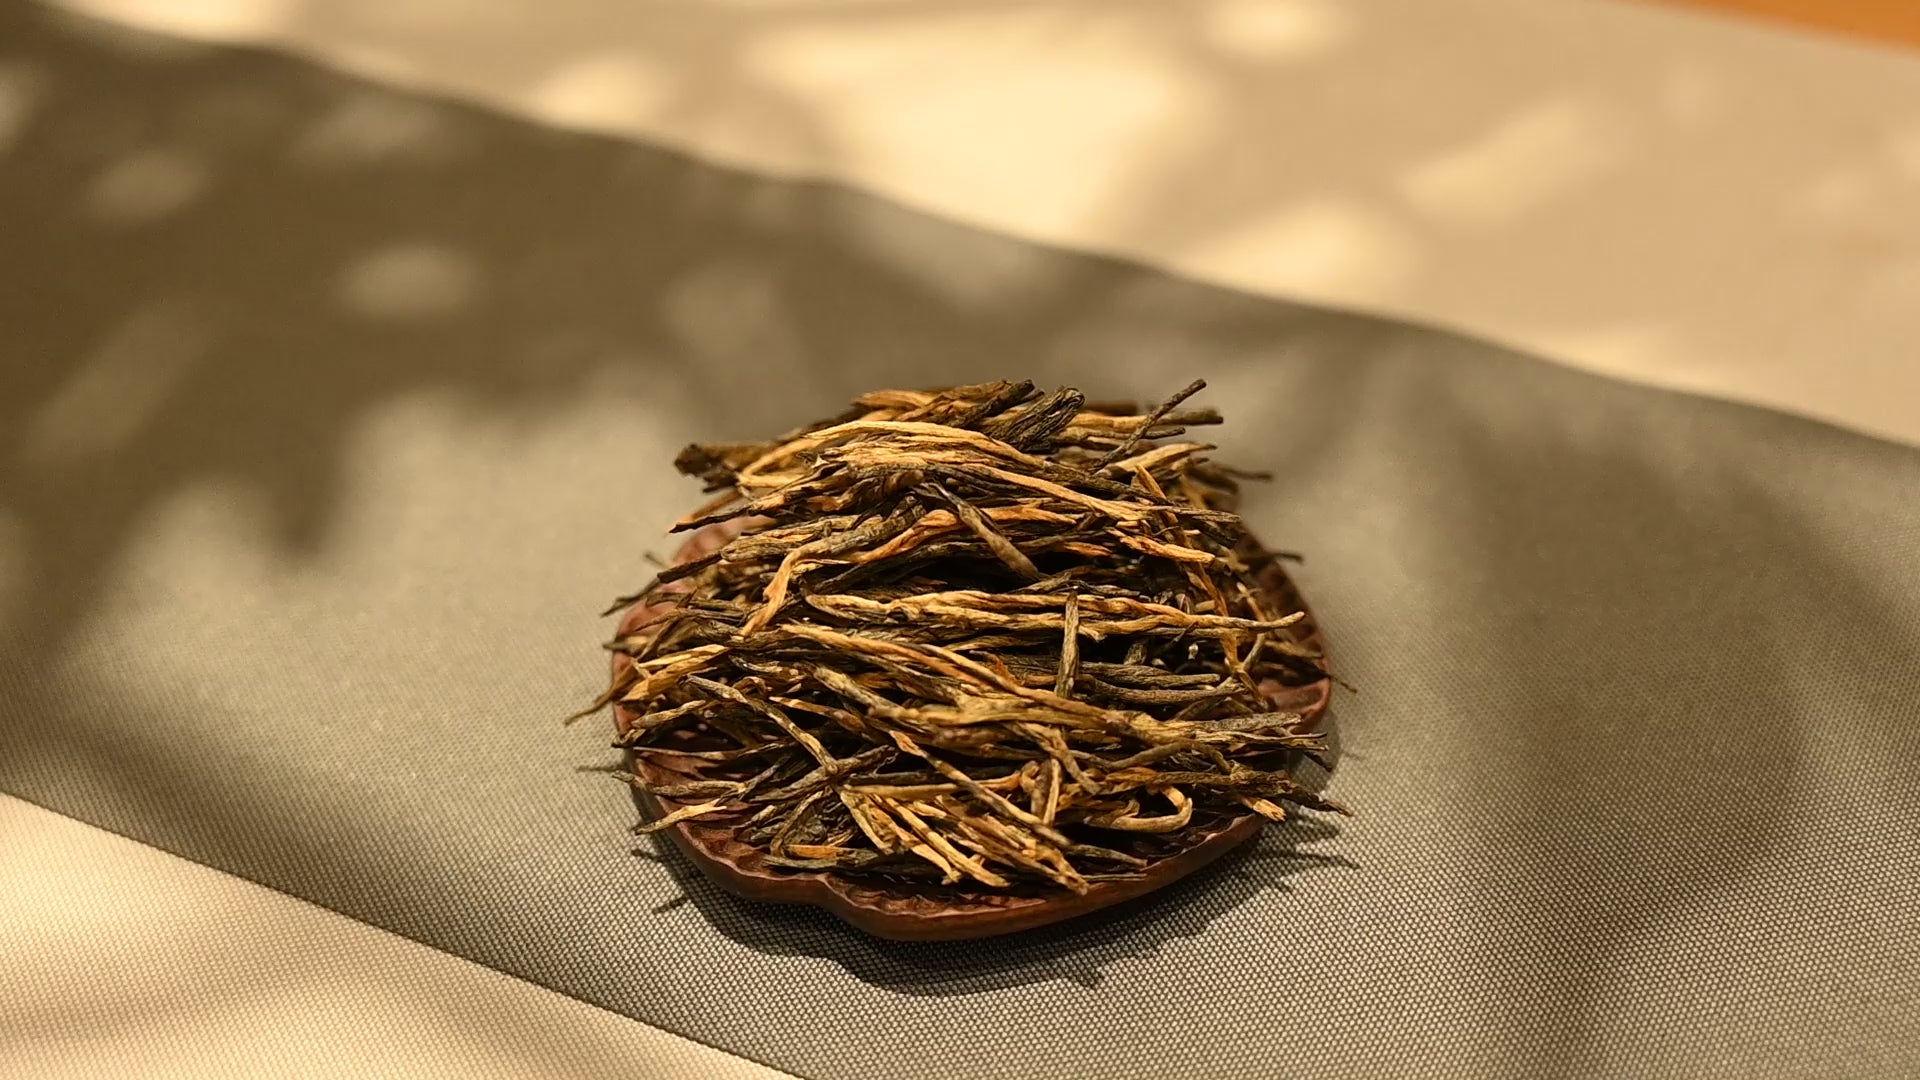 Load video: Changning puerh black tea 